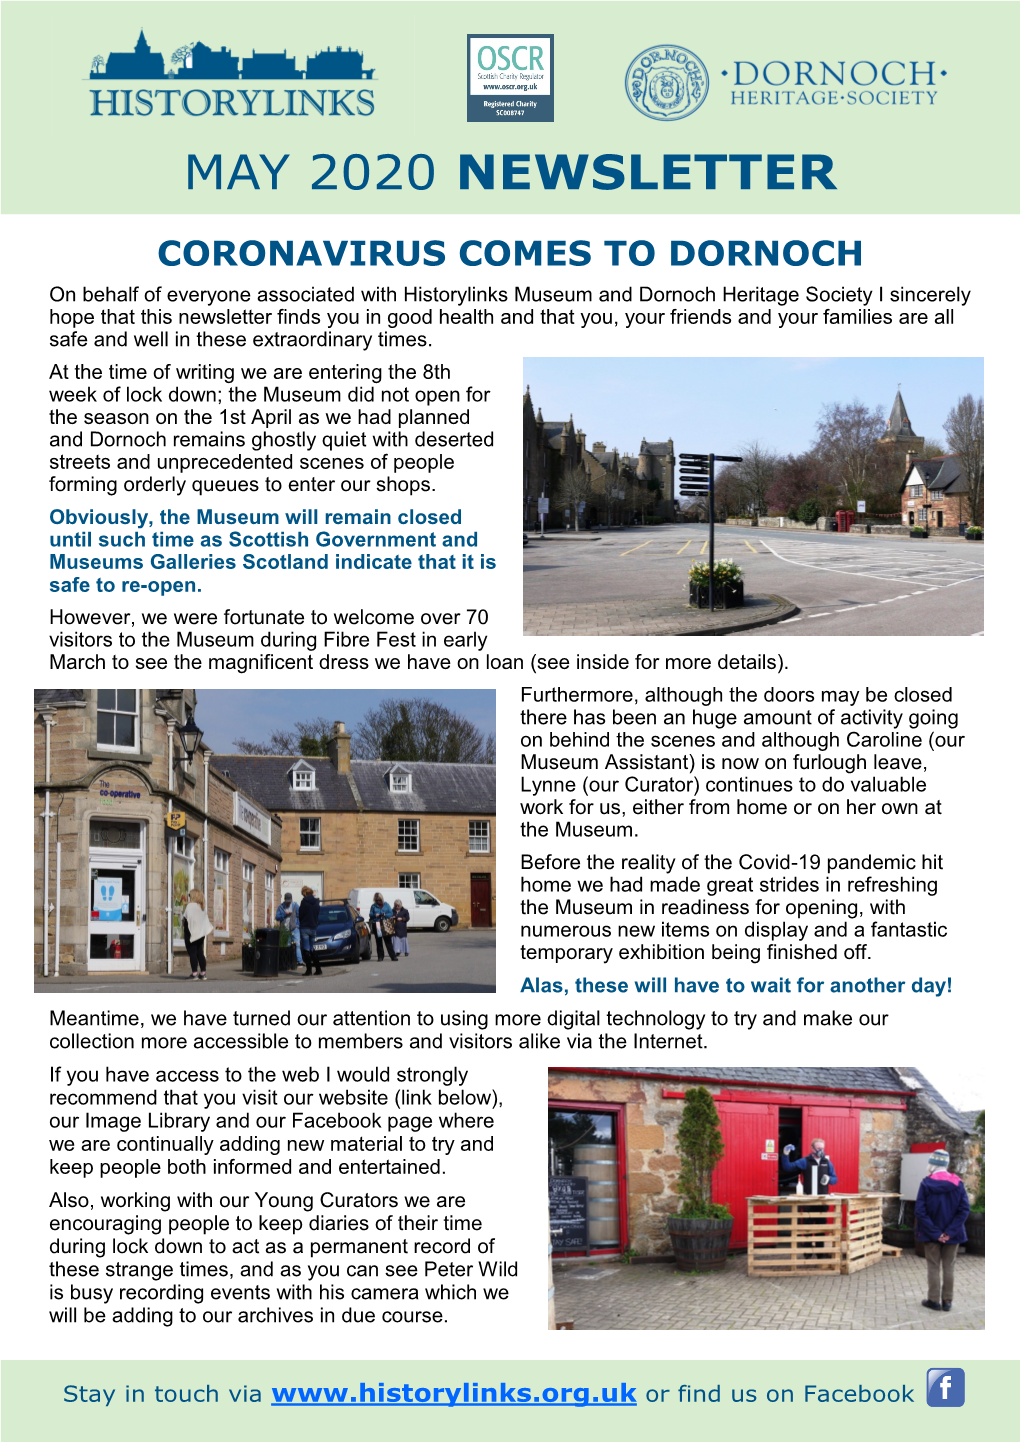 Coronavirus Comes to Dornoch